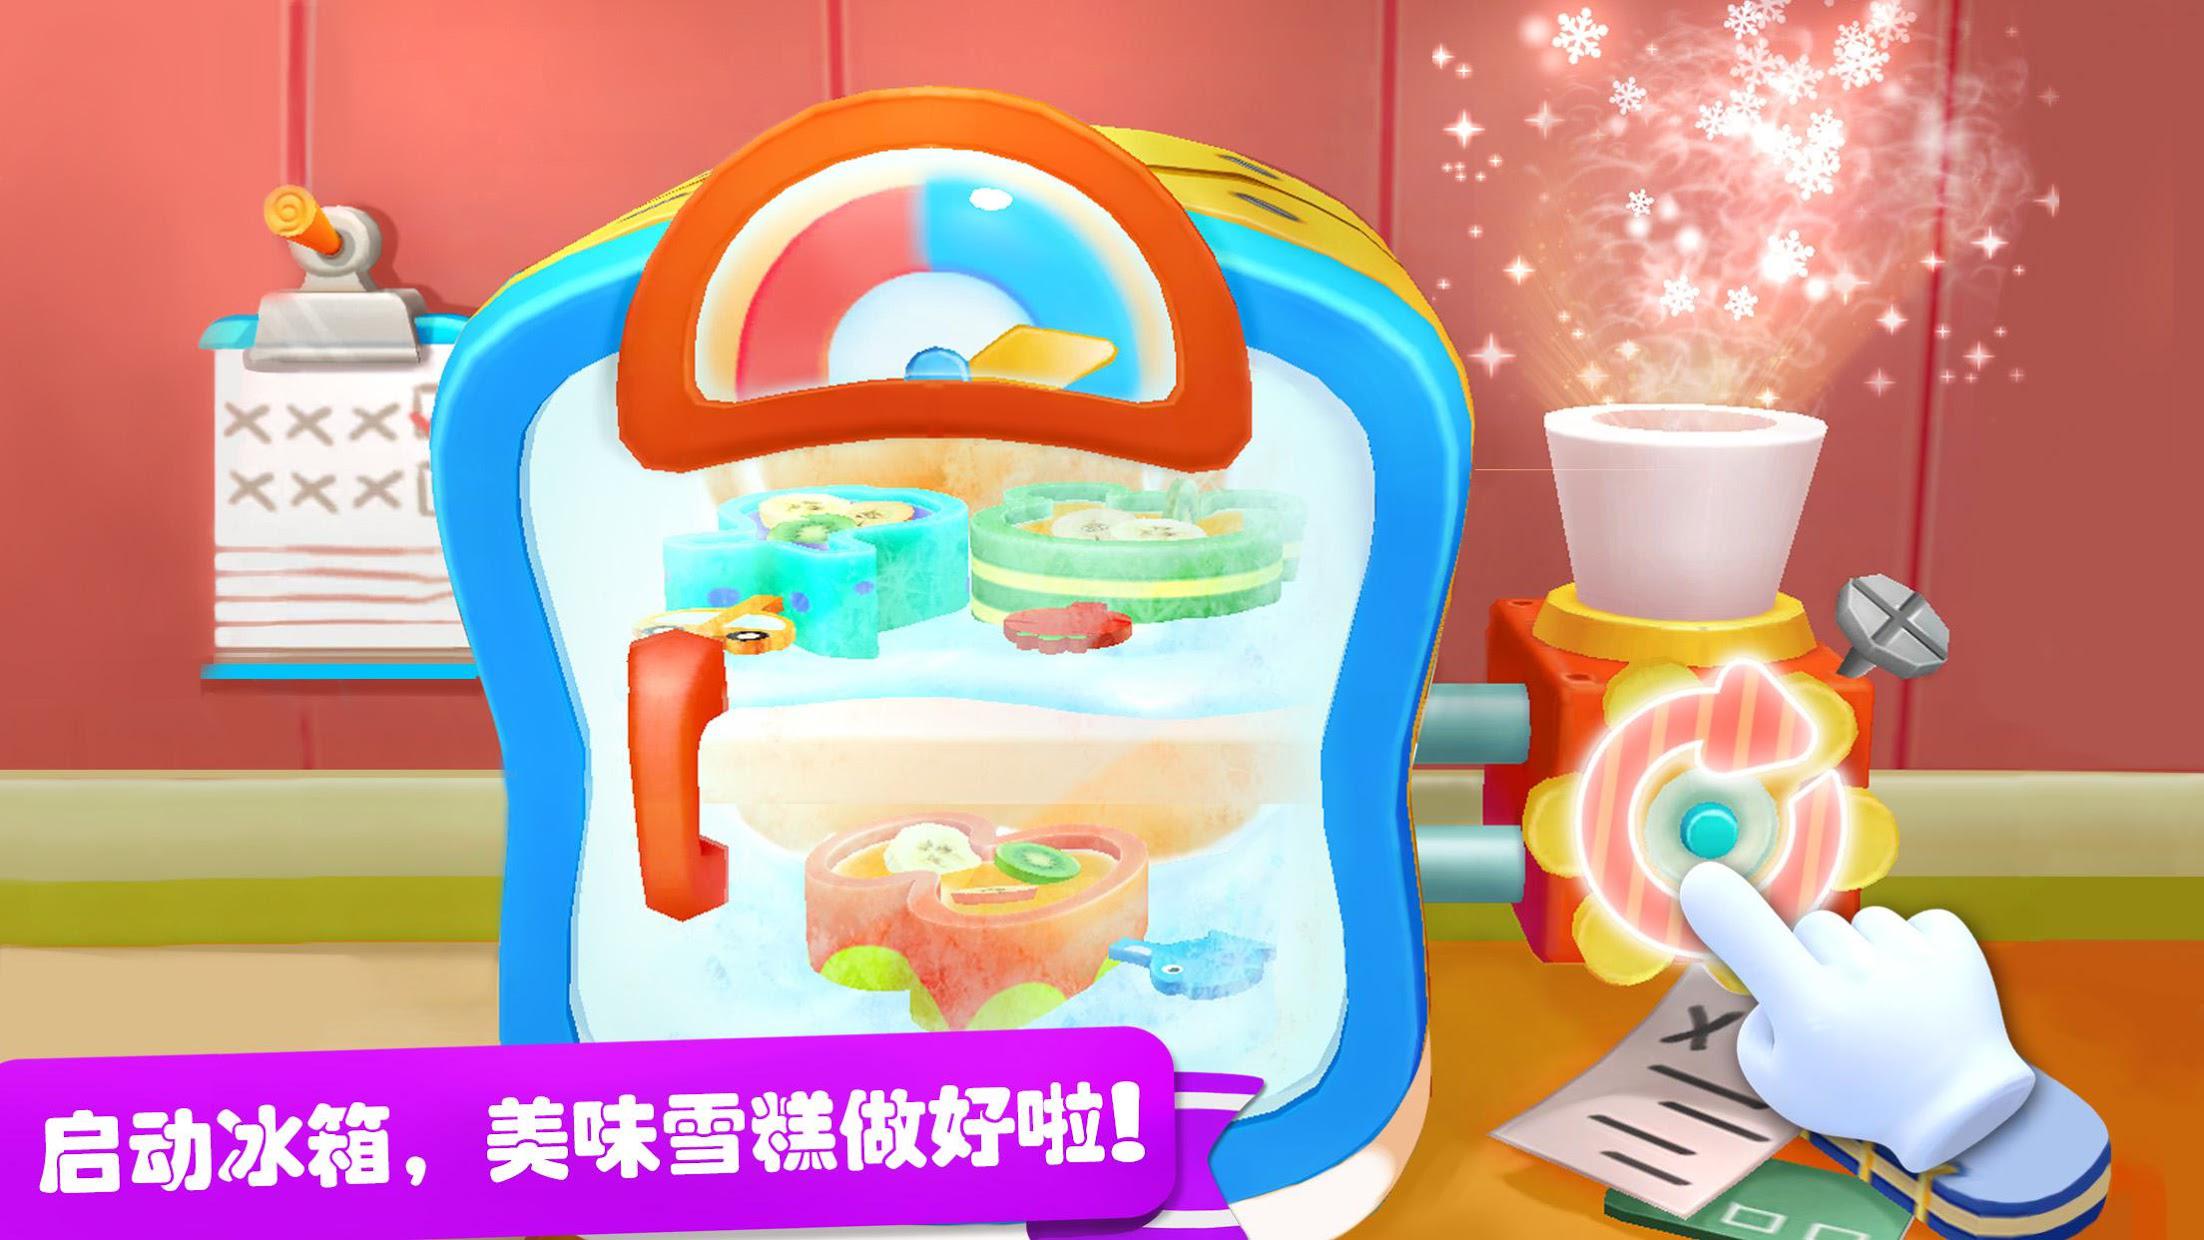 雪糕工厂 - 趣味雪糕制作儿童游戏 - 宝宝巴士_游戏简介_图2